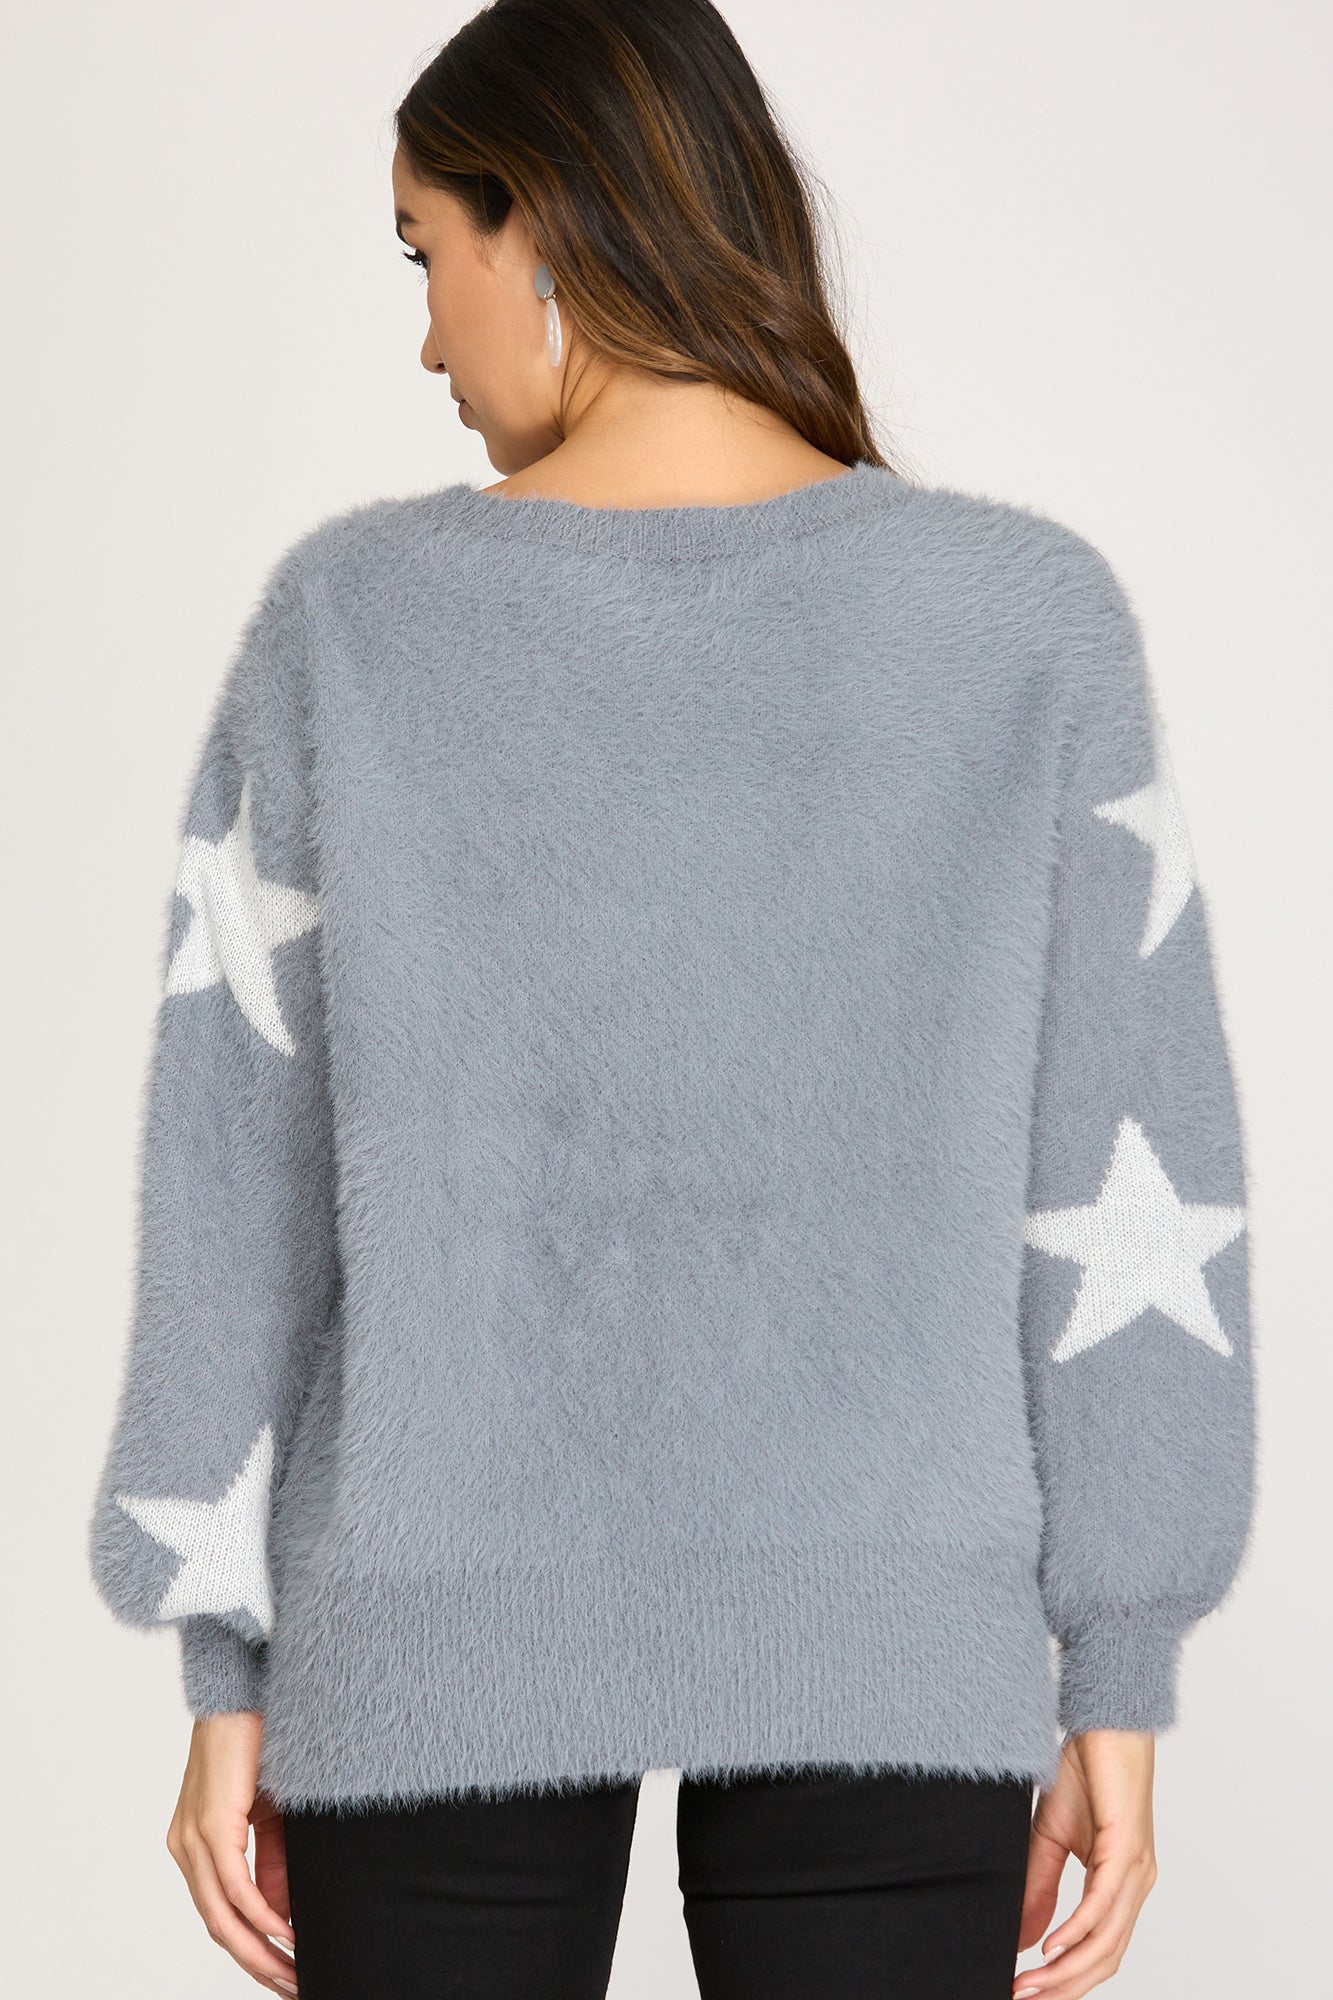 Sheliah Star Sweater Top